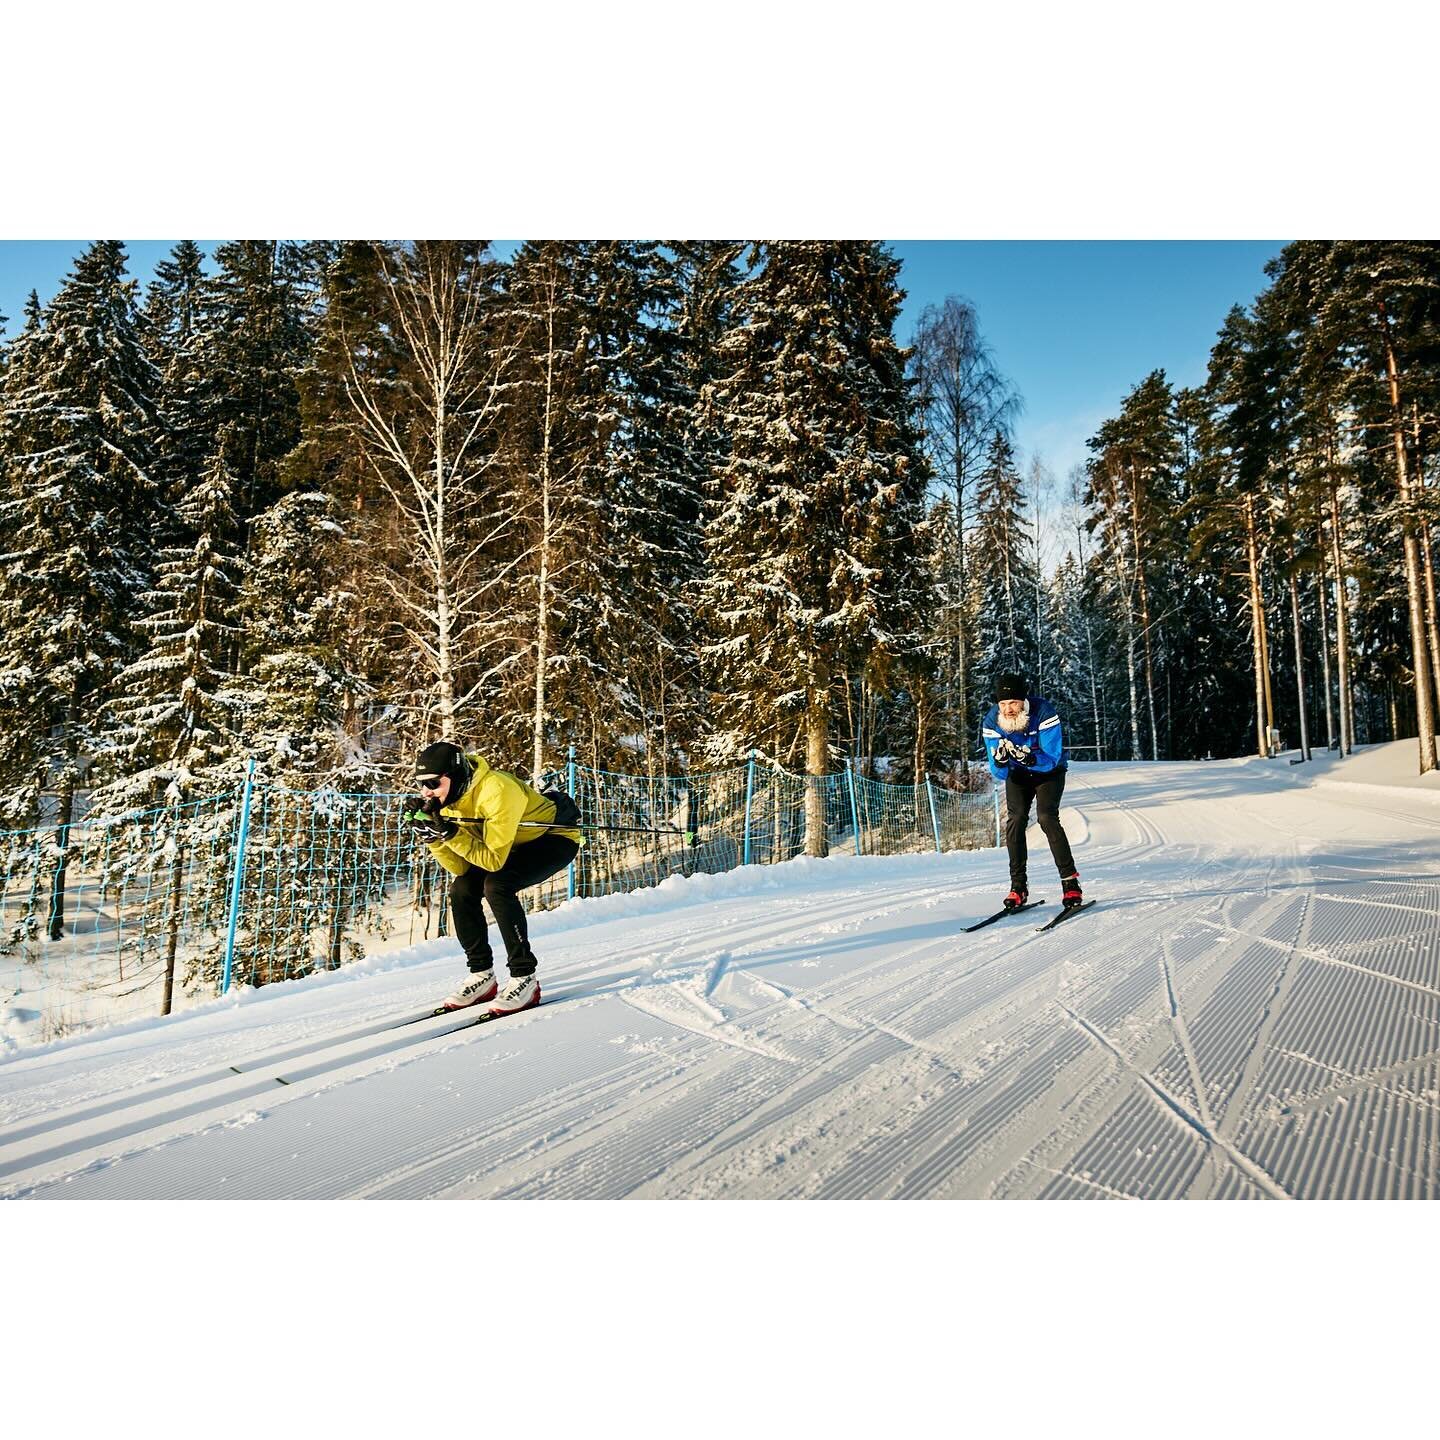 XC skiing luxury in Lahti with @heikki.tapaninen &amp; @mikkoeinar 
#crosscountryskiing #xcskiing #hiihto #hiiht&auml;m&auml;ss&auml; #salpausselk&auml;